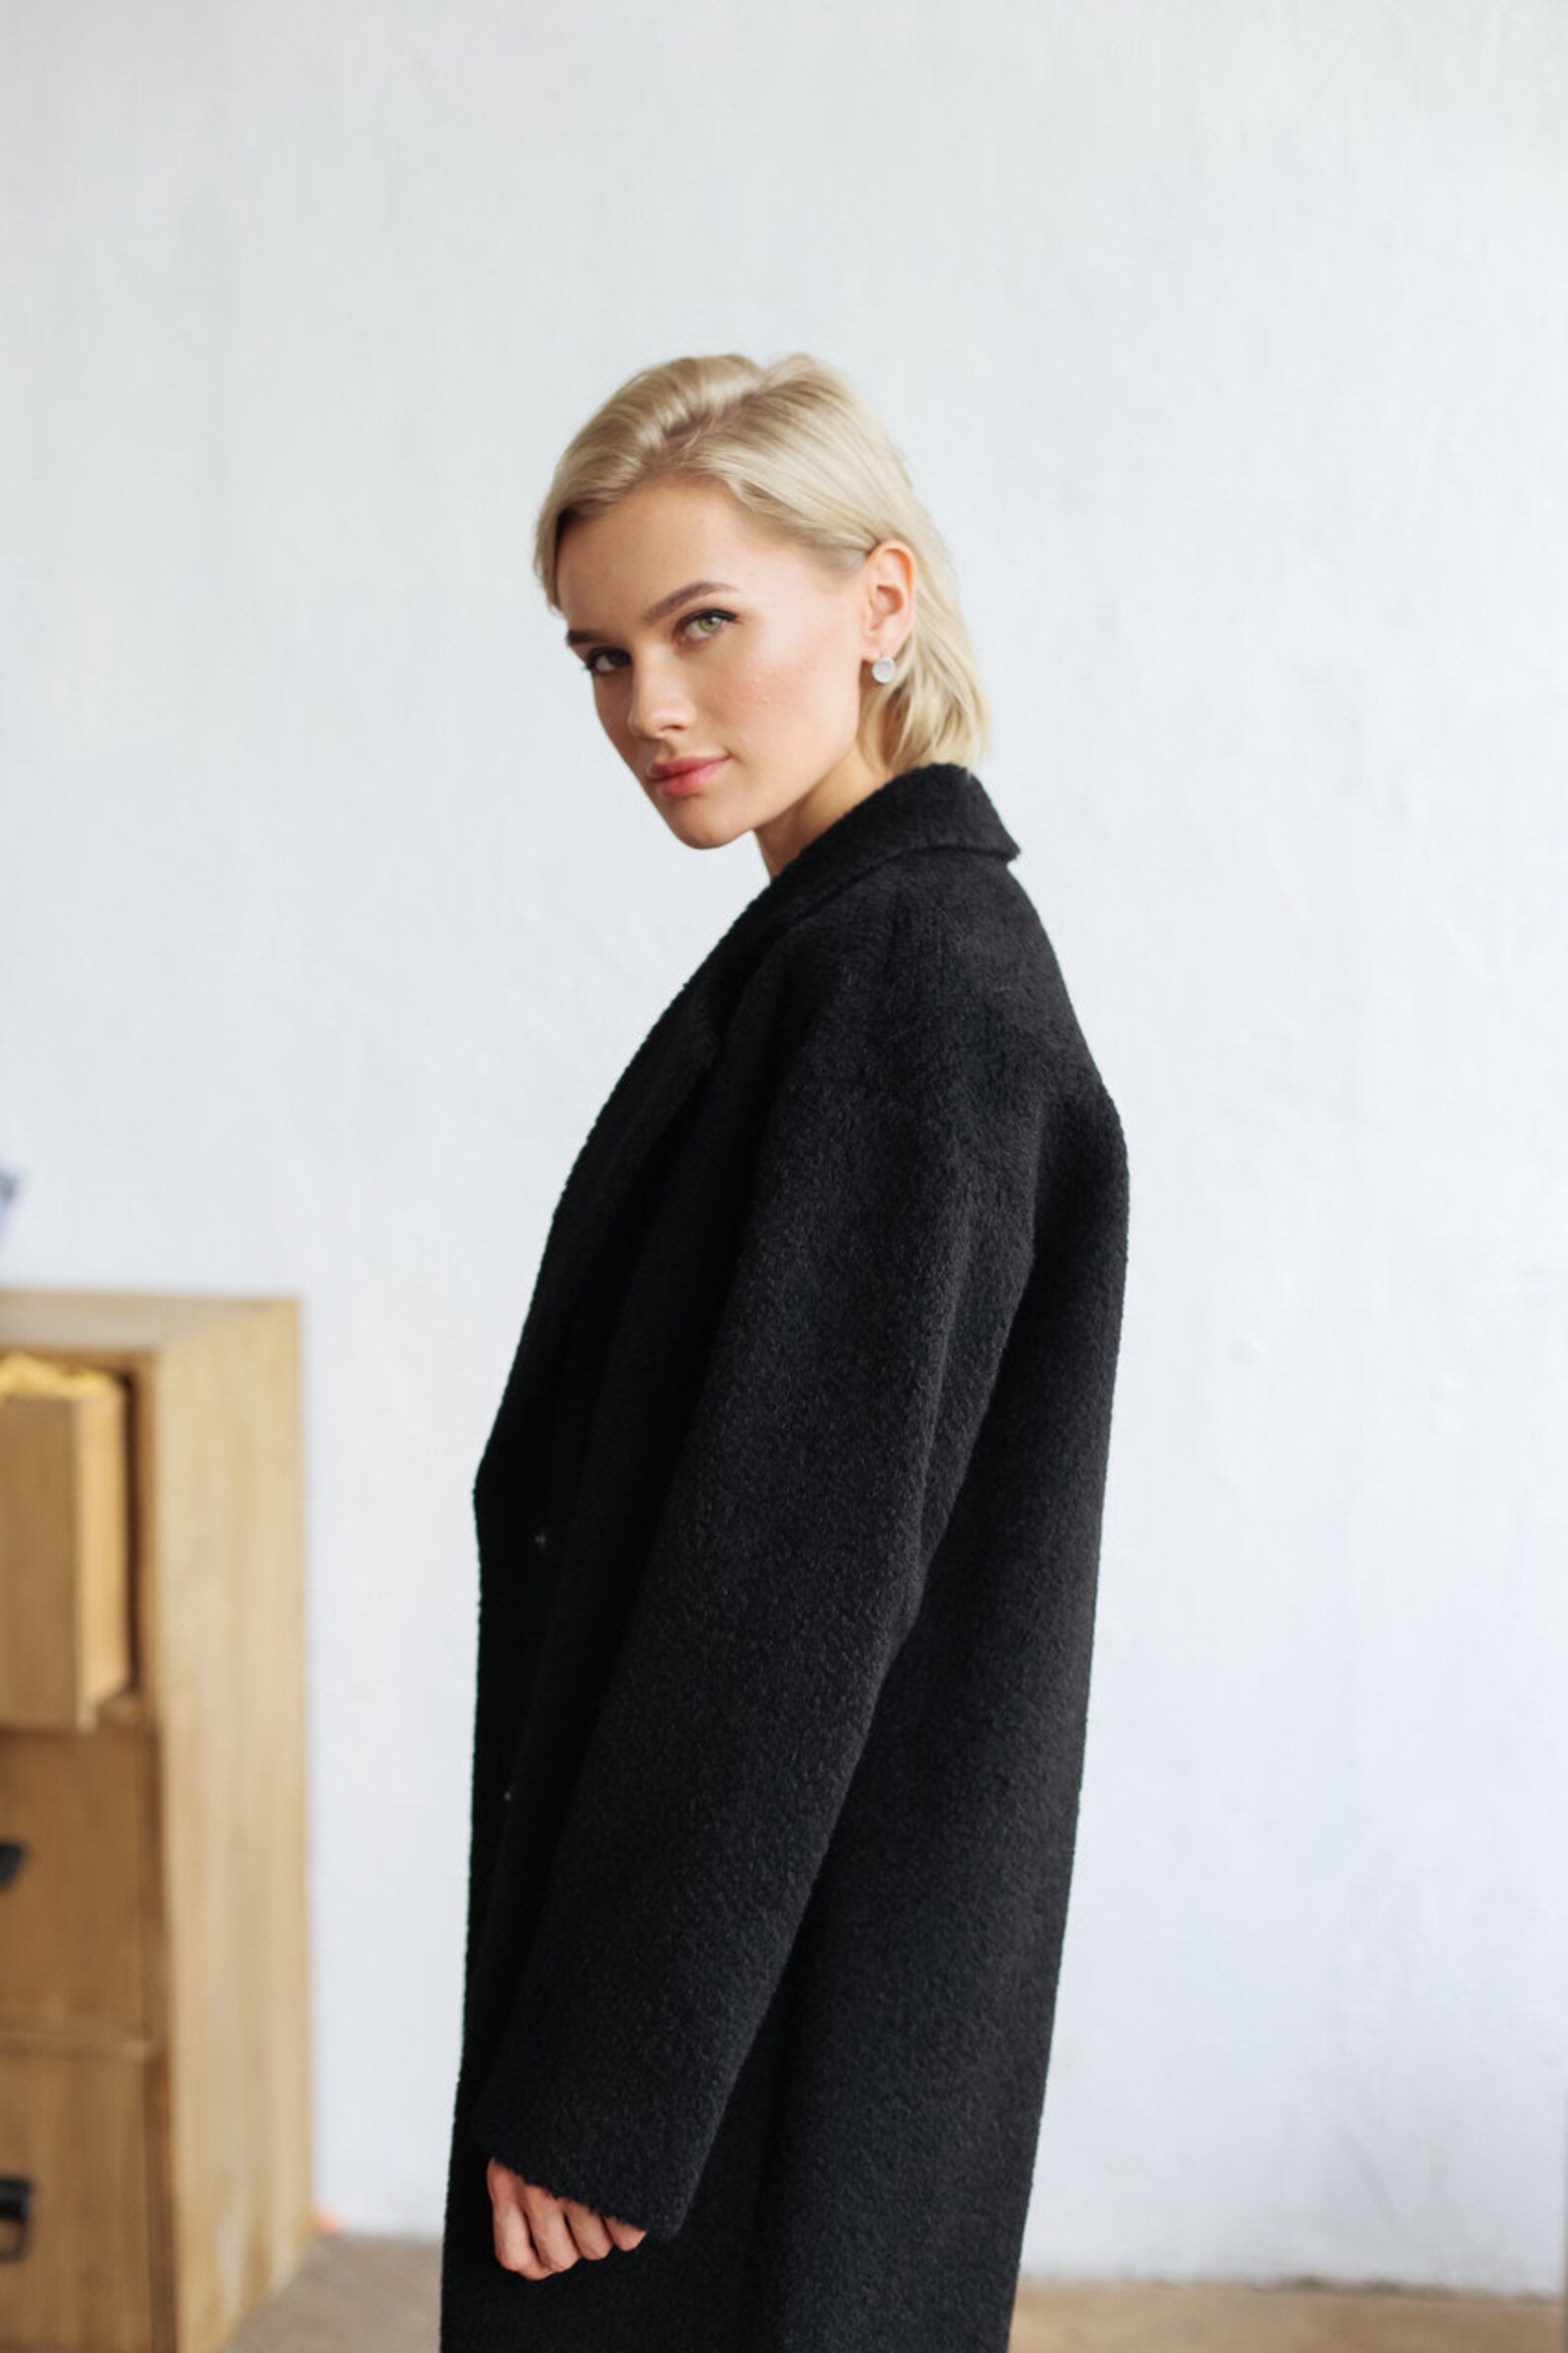 Women Alpaca Coat Black wool coat winter coat | Etsy